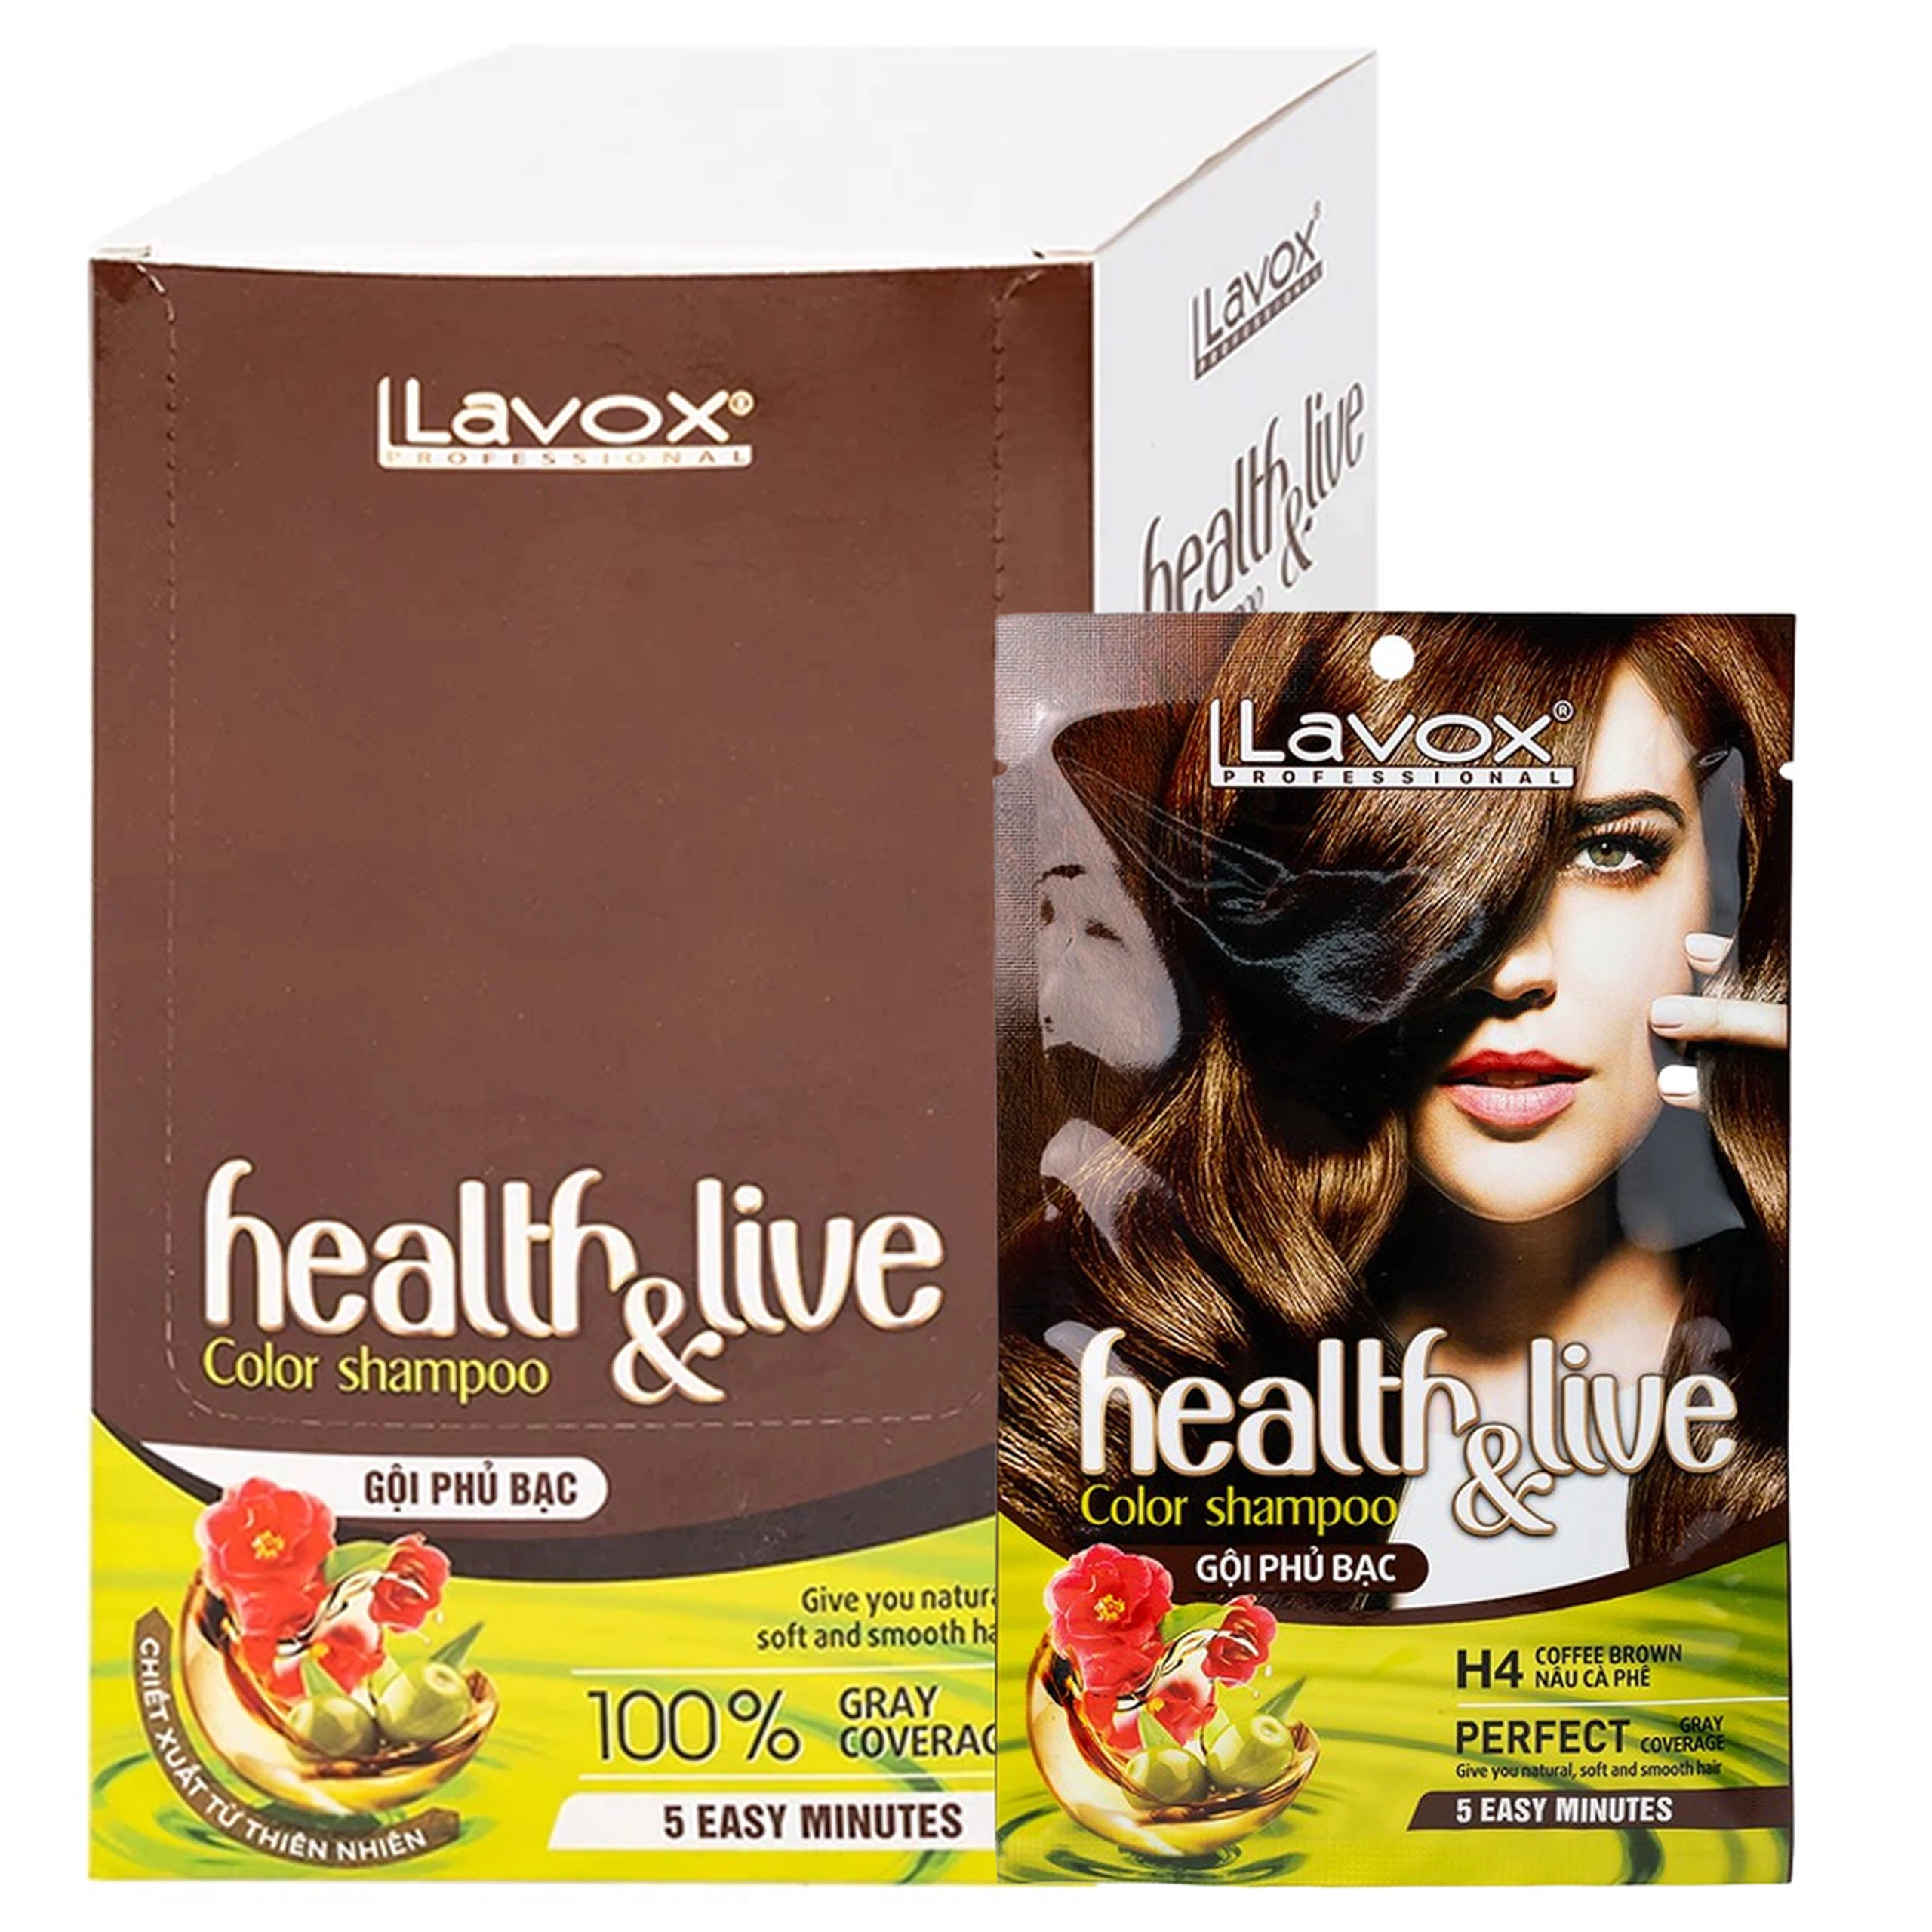 Gội phủ bạc Health and live H4 Lavox màu nâu cà phê (10 gói x 30ml)